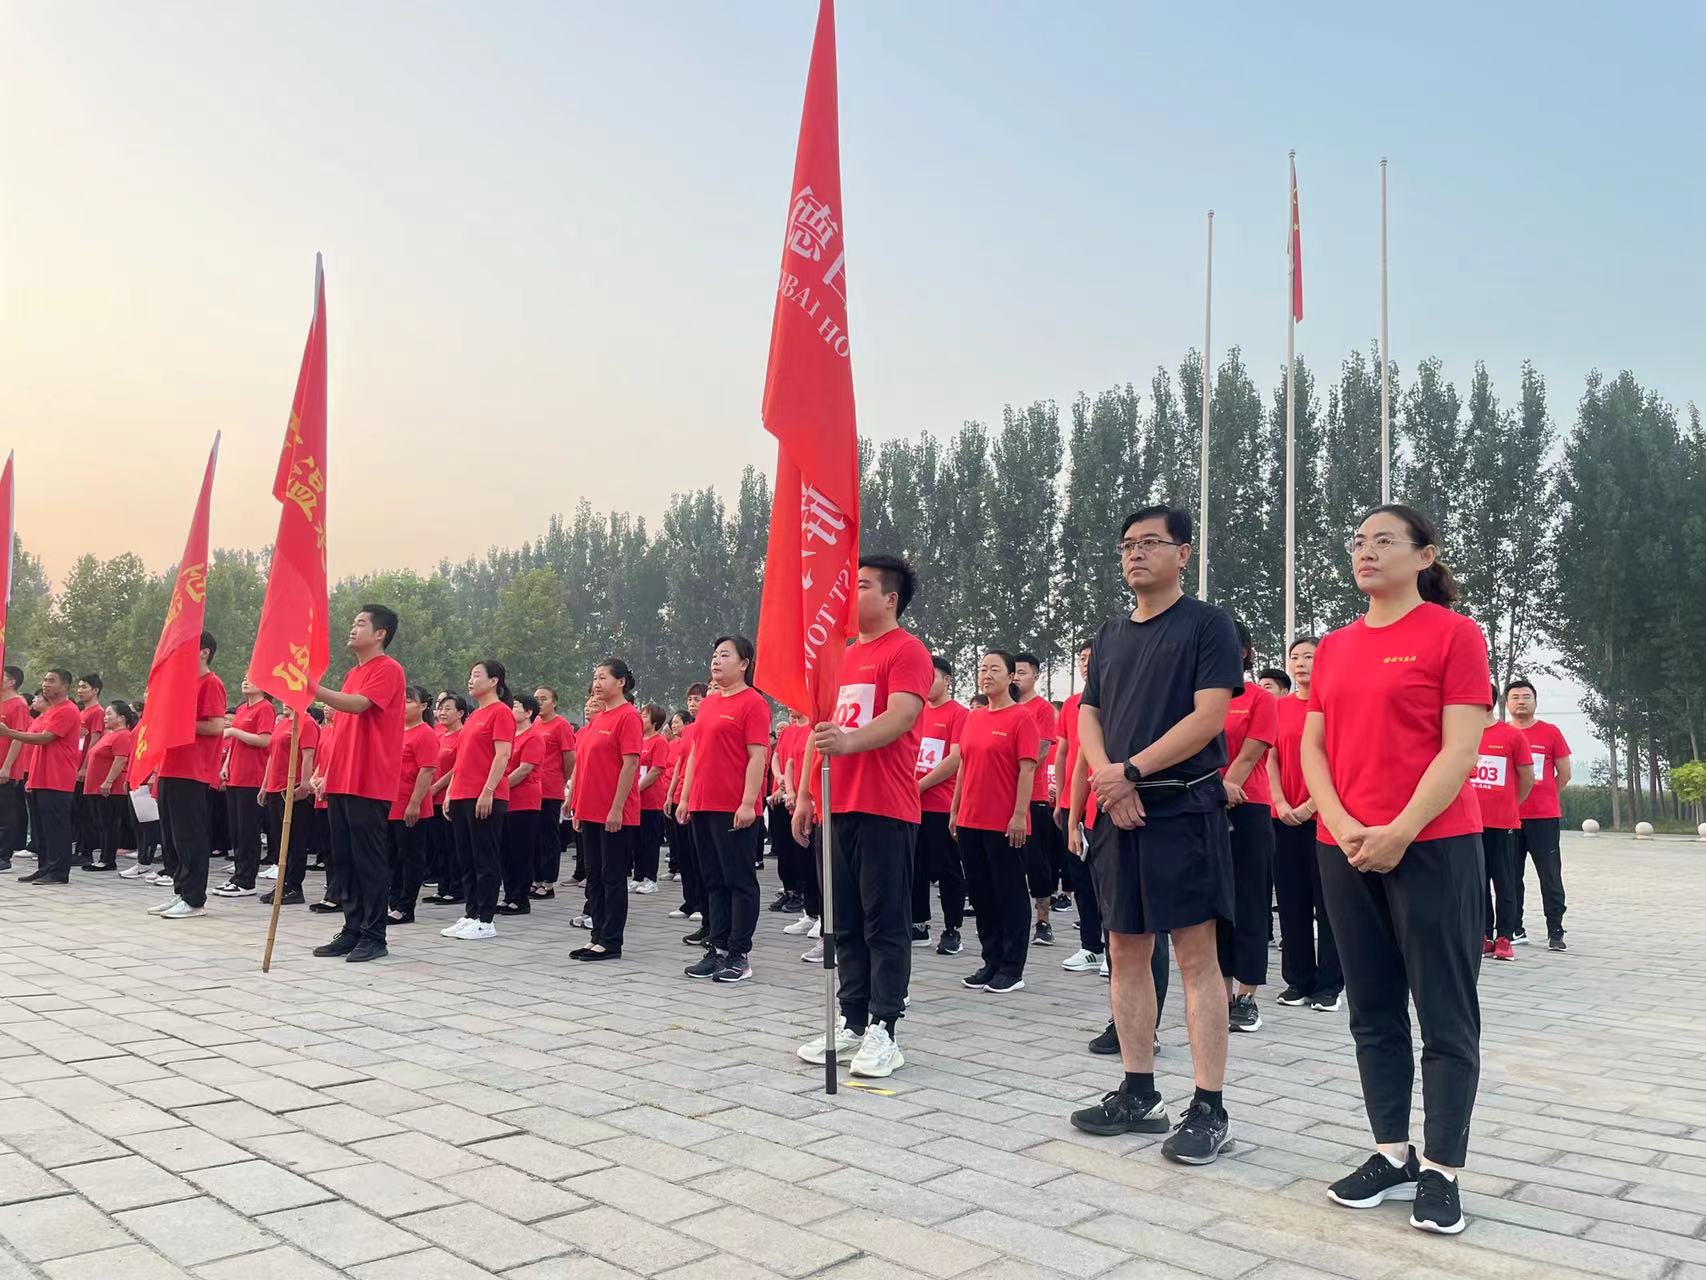 夏津县举行“乡村文化振兴 两节四集六赛”之全民健步走活动